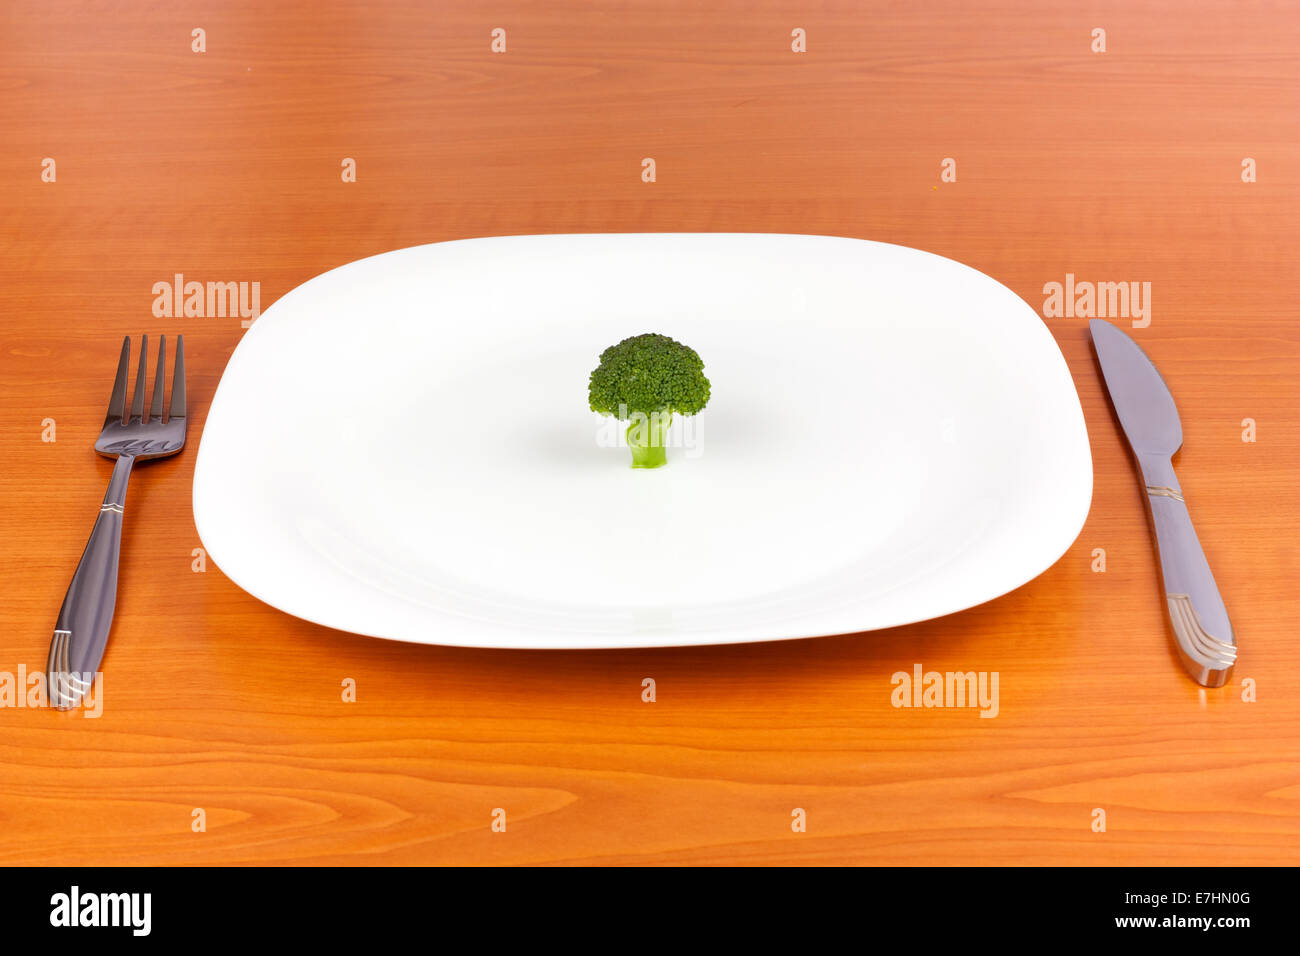 Le brocoli sur plaque avec fourchette et couteau sur fond de bois Banque D'Images